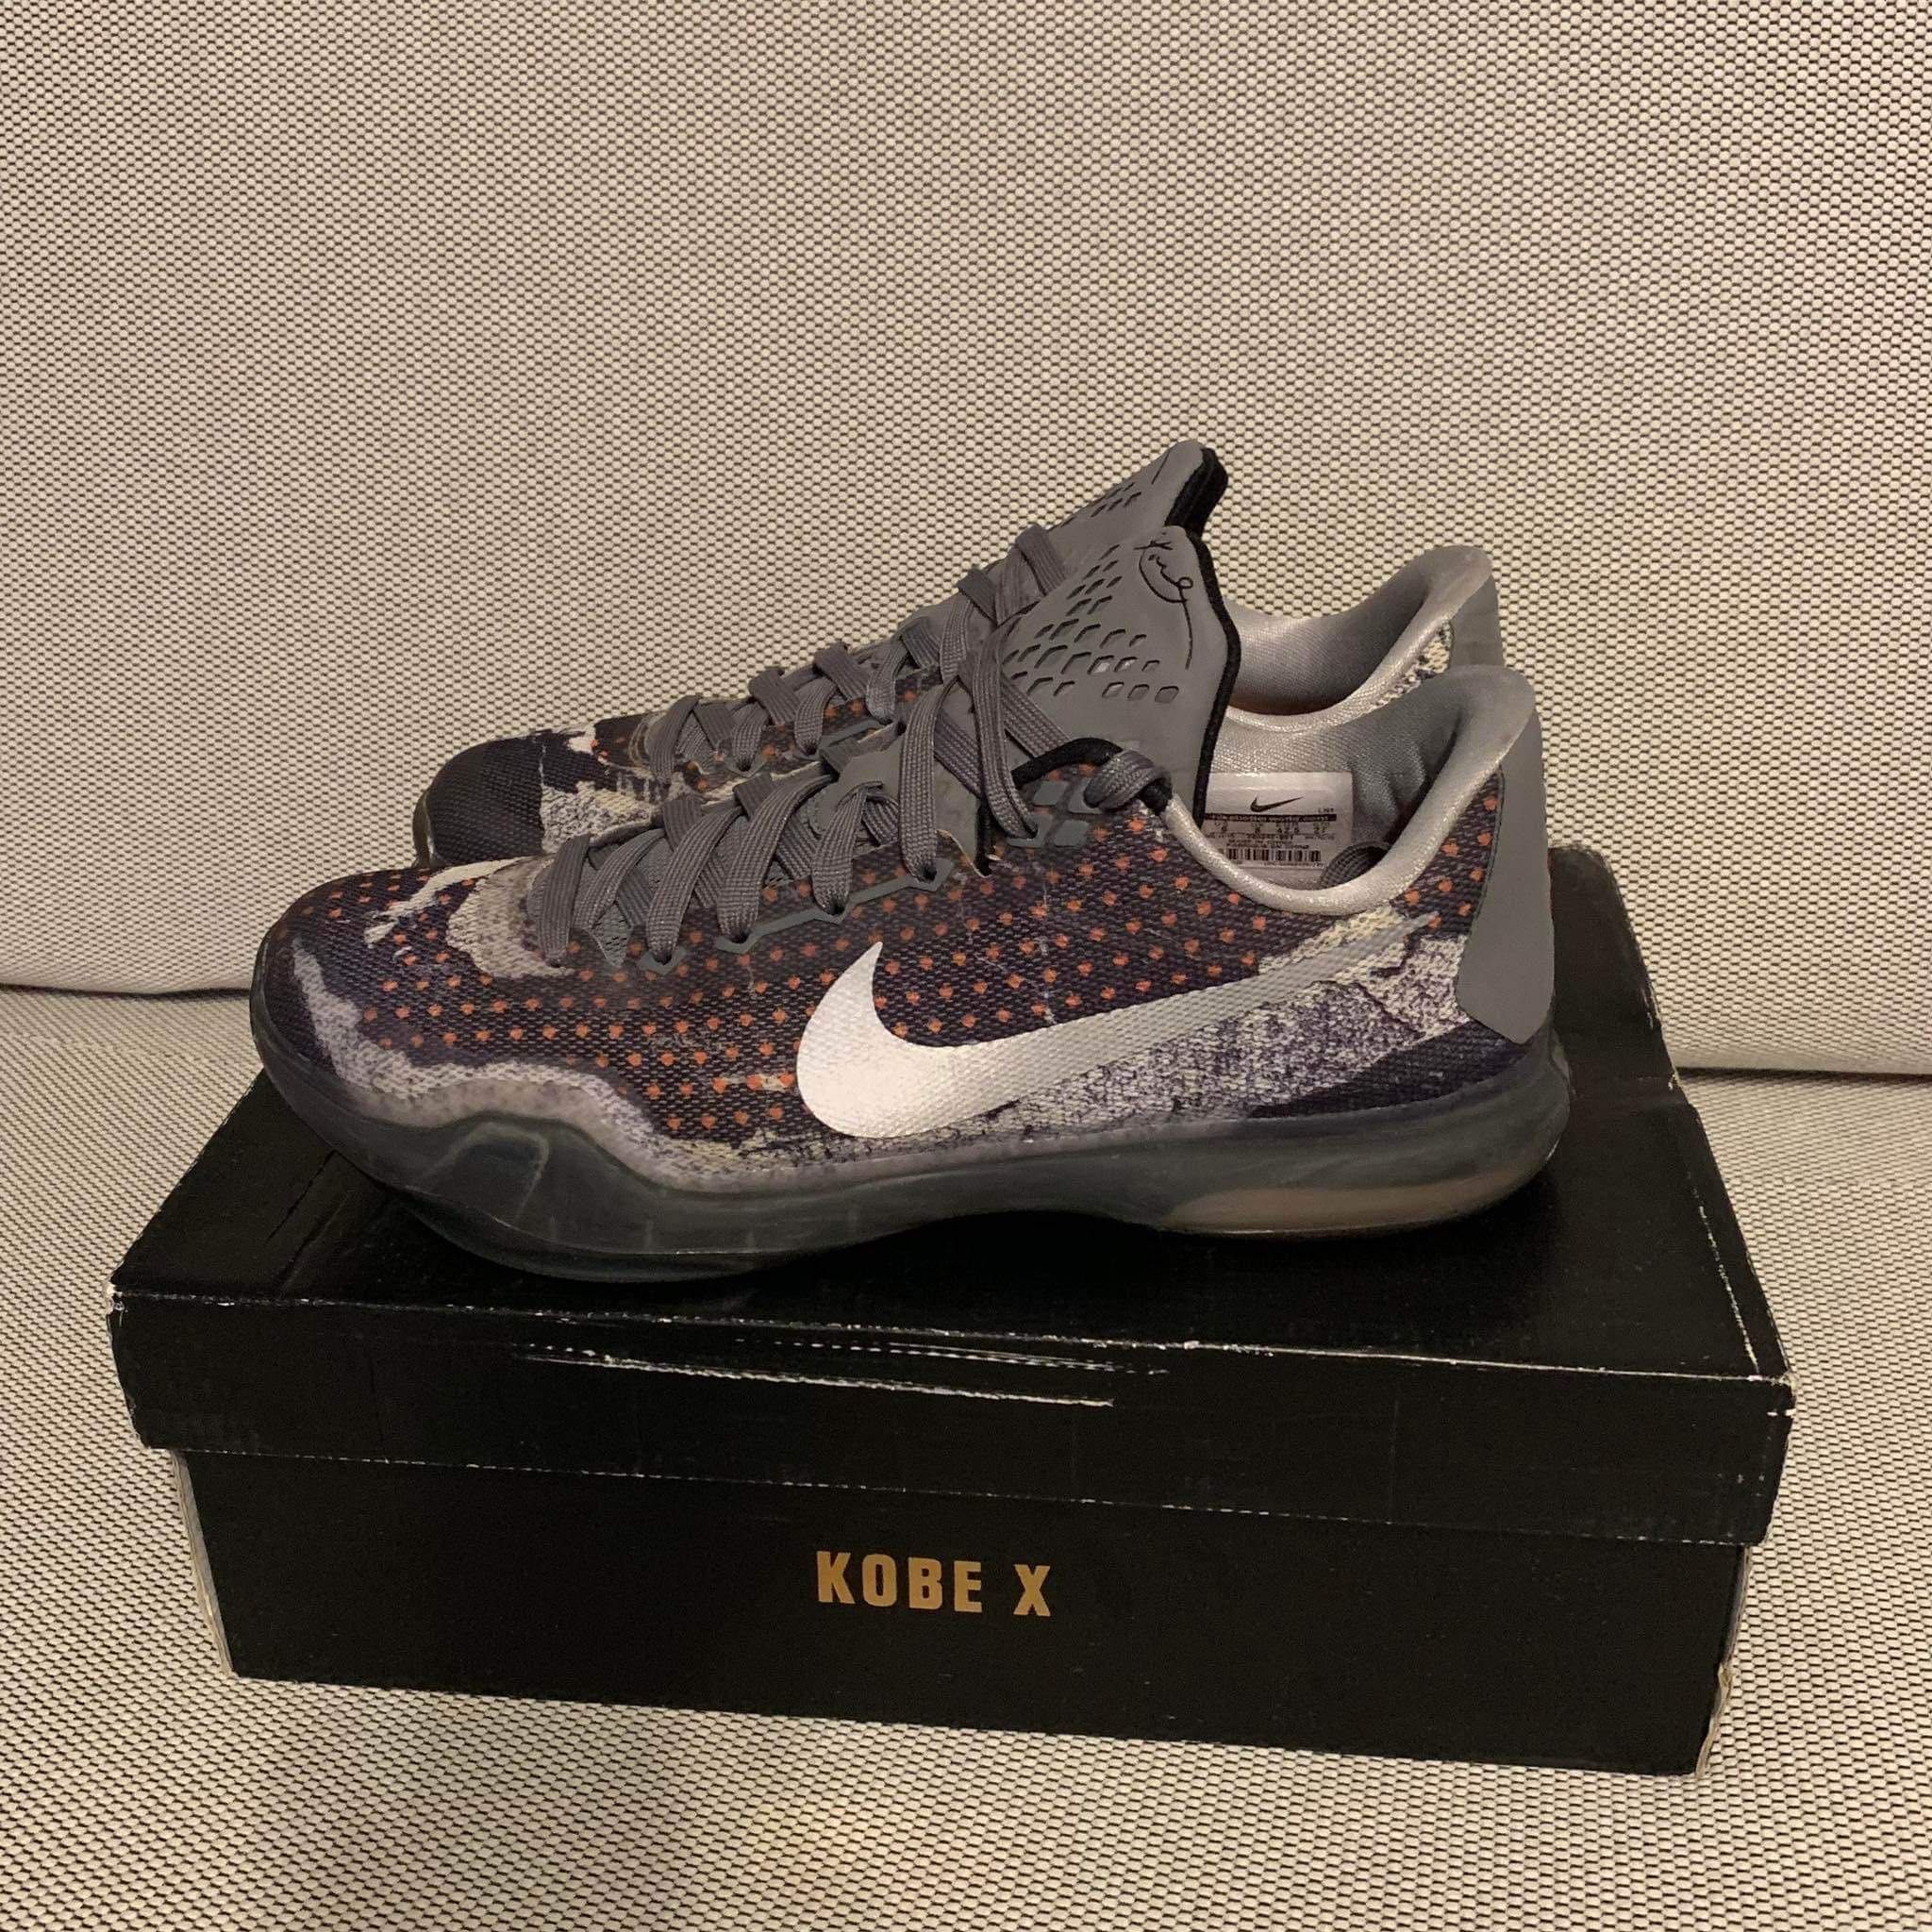 Buty Nike Kobe X Pain rozmiar 42.5 27cm do koszykówki